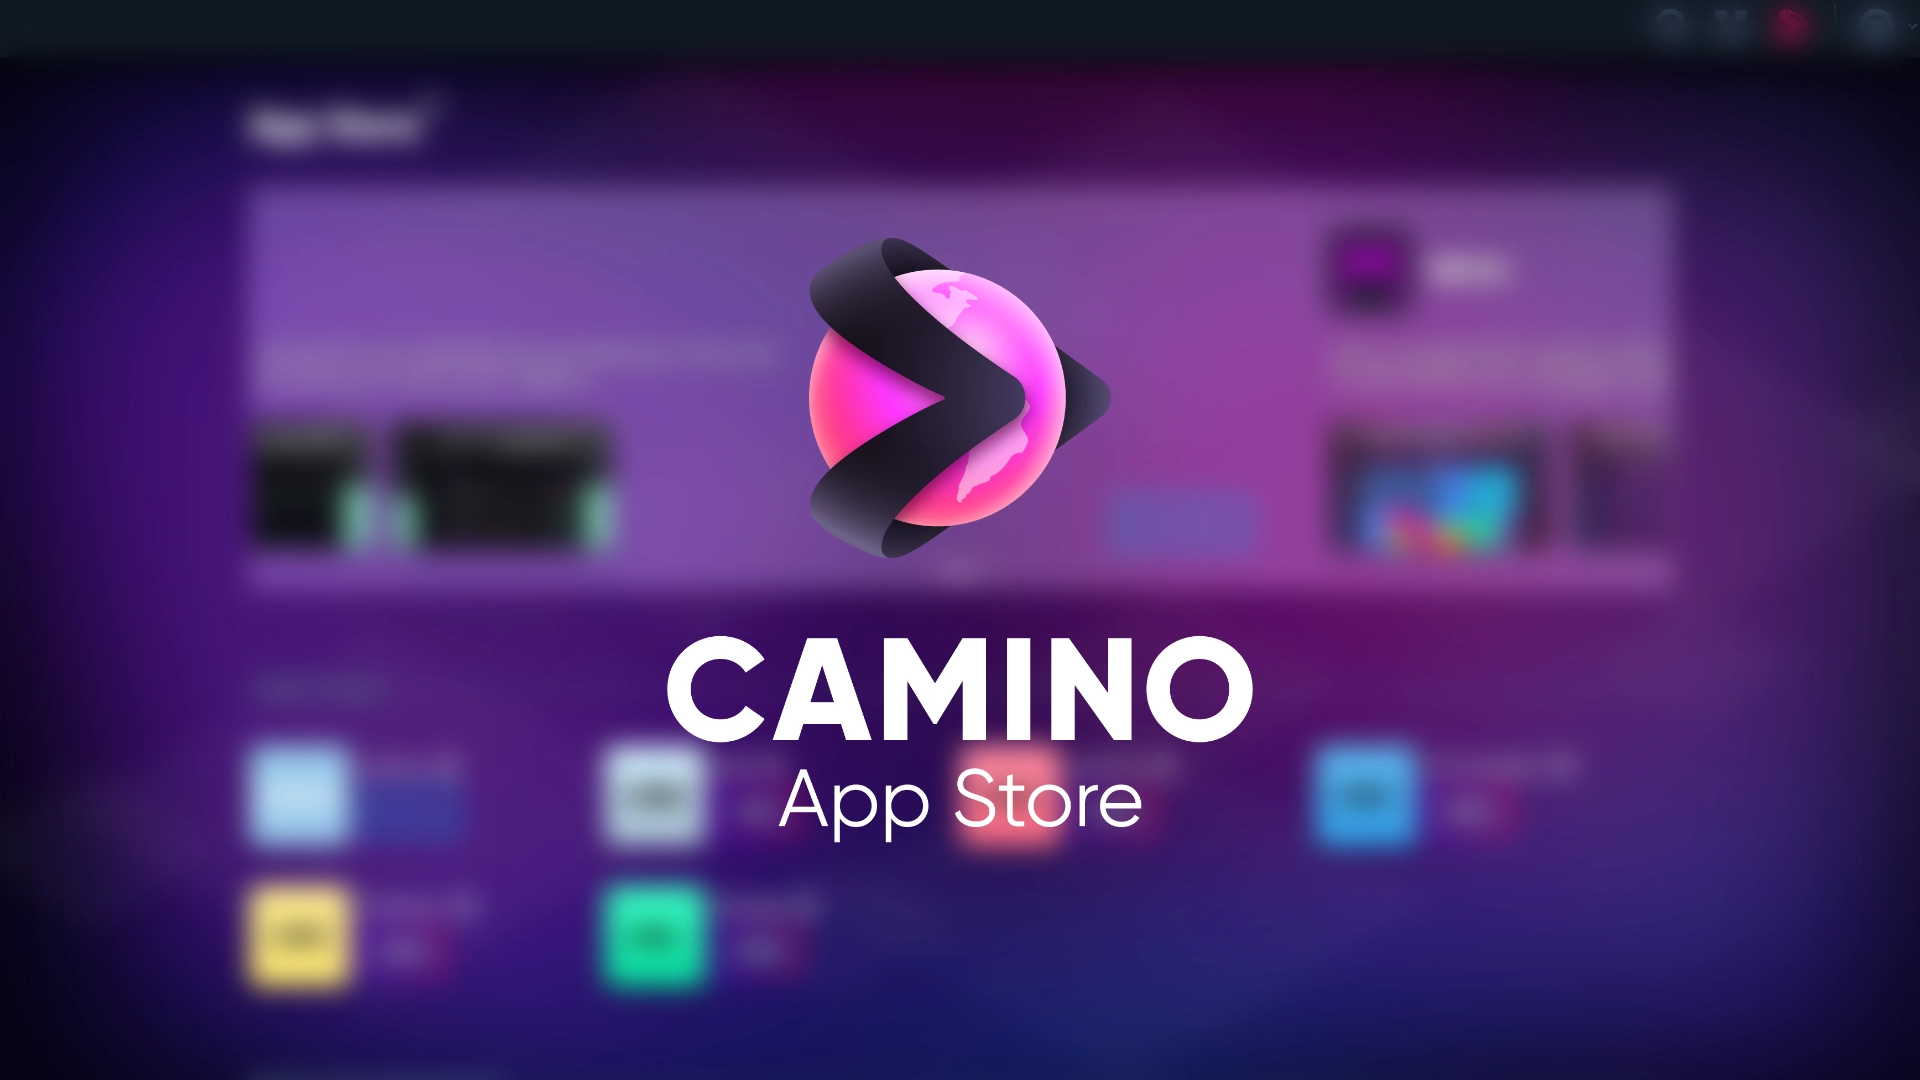 Camino App Store, Universal Music Group